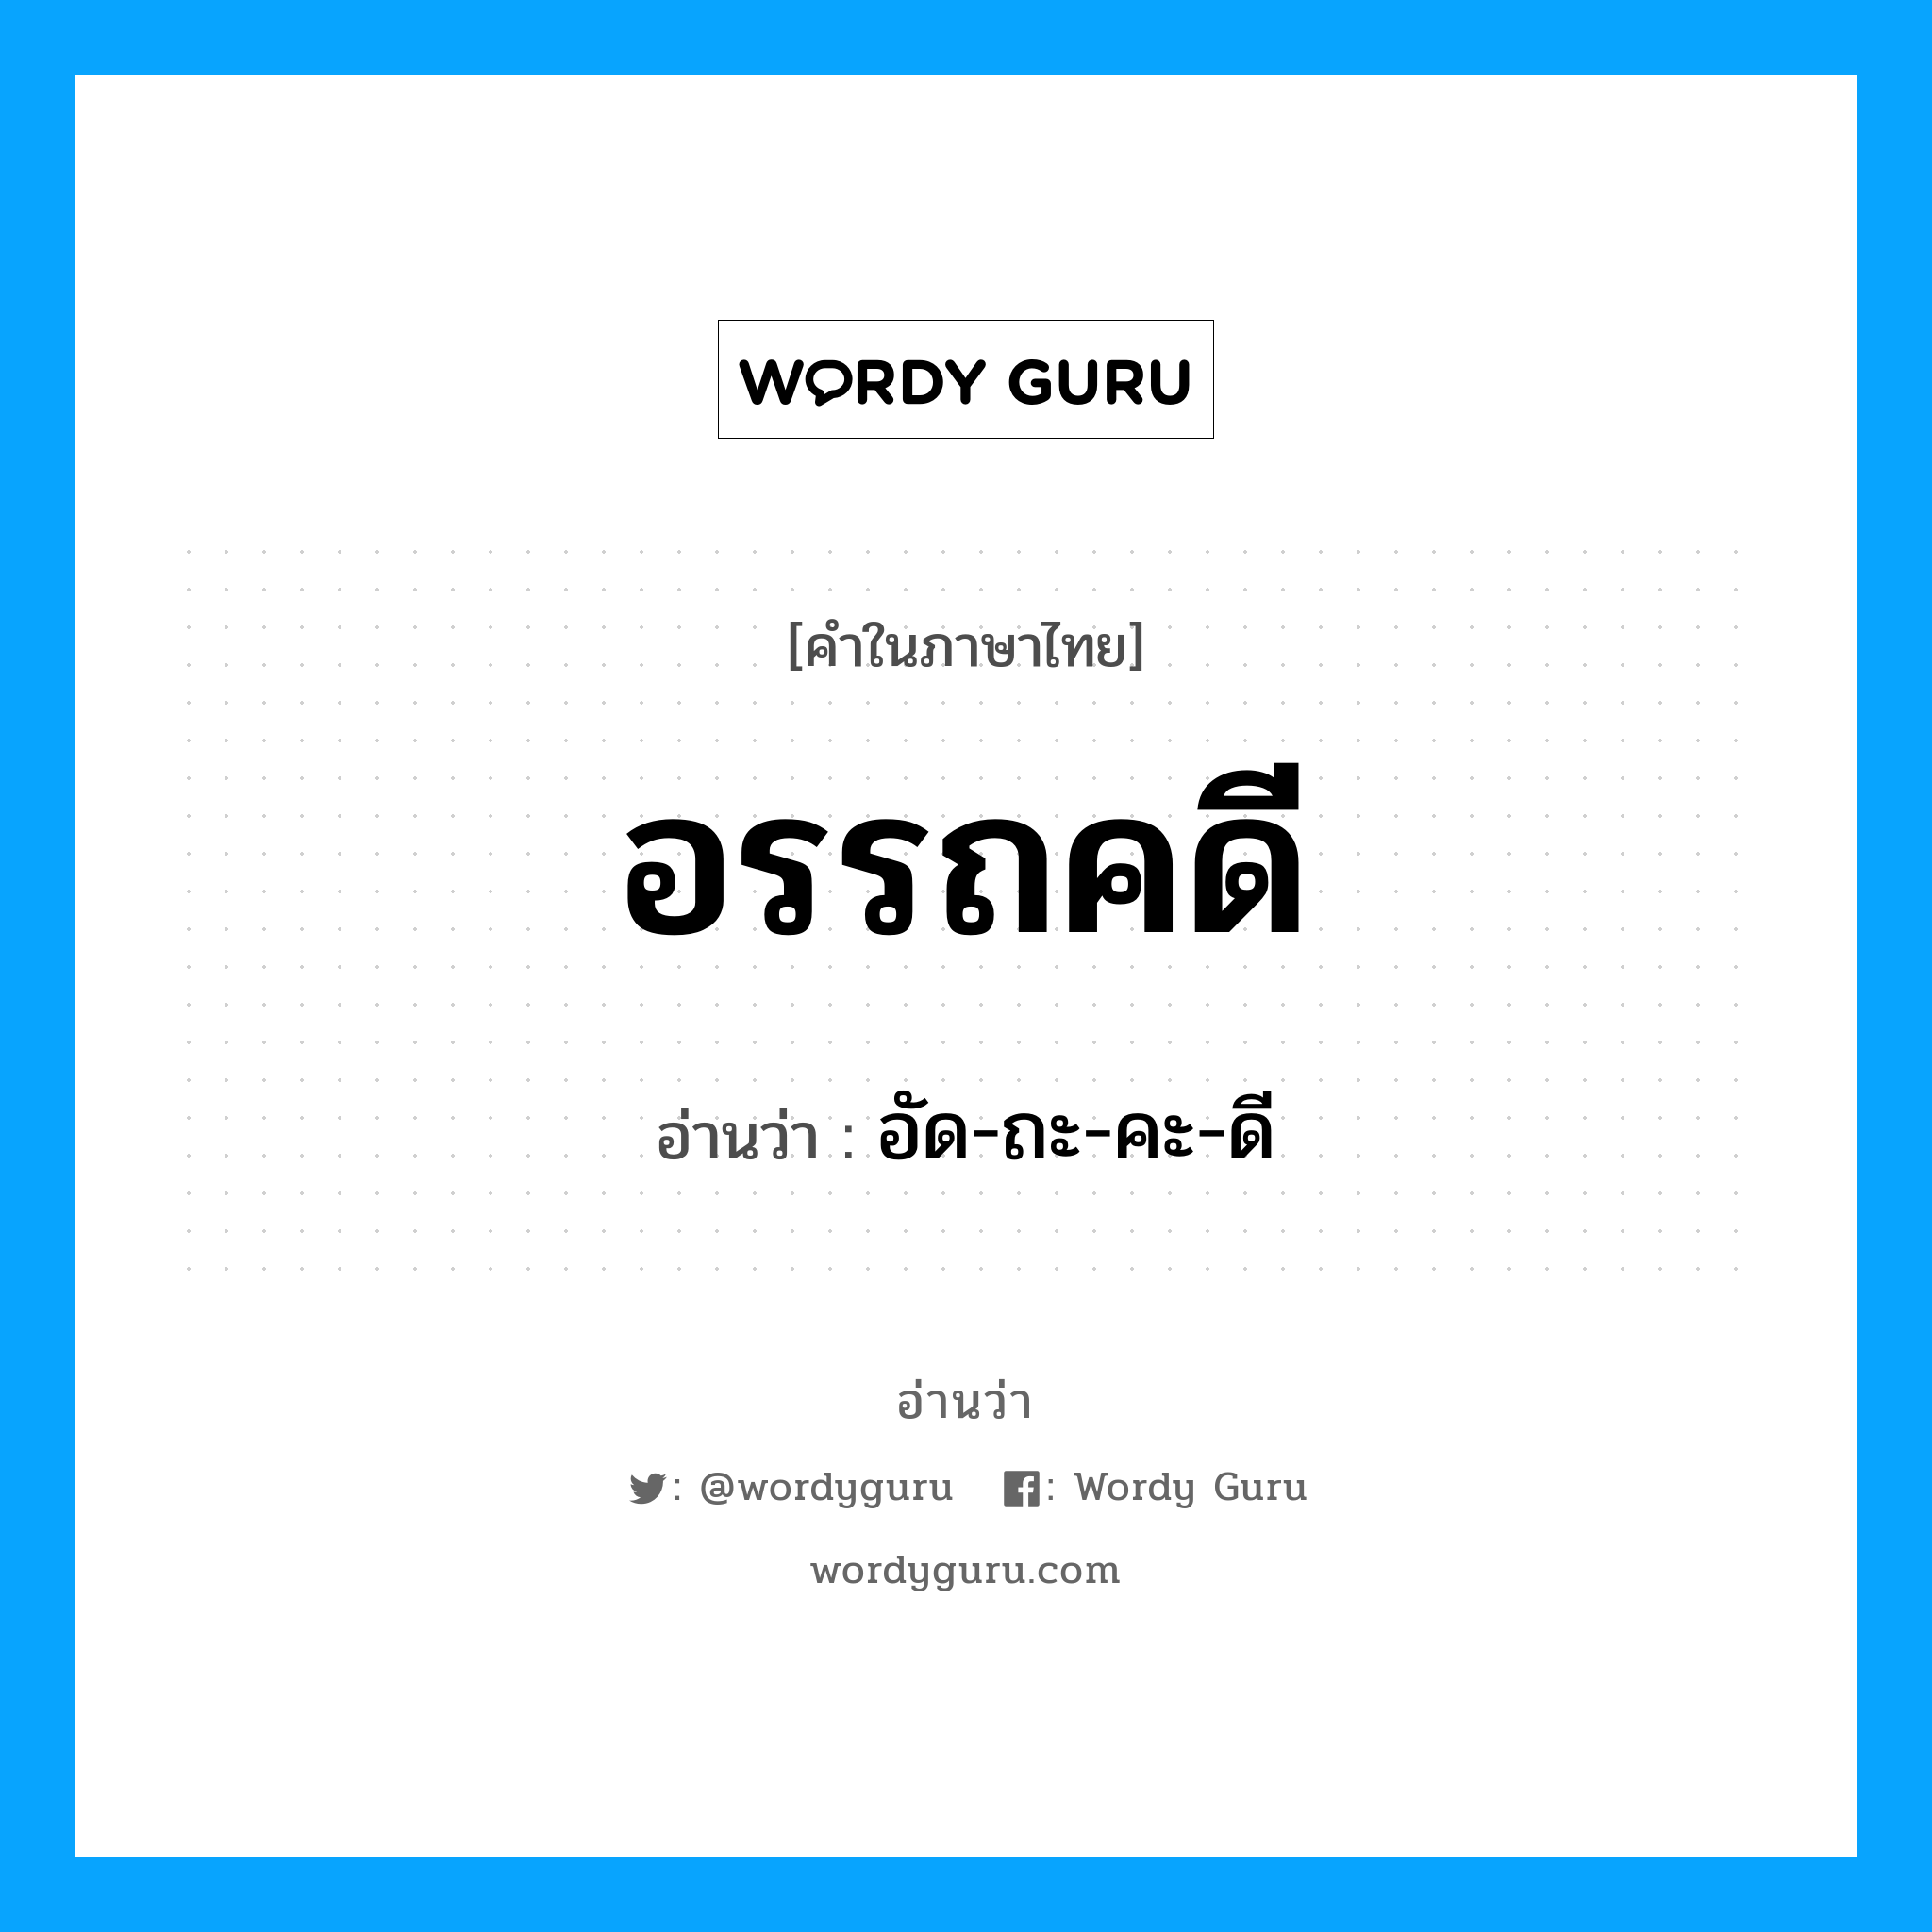 อัด-ถะ-คะ-ดี เป็นคำอ่านของคำไหน?, คำในภาษาไทย อัด-ถะ-คะ-ดี อ่านว่า อรรถคดี